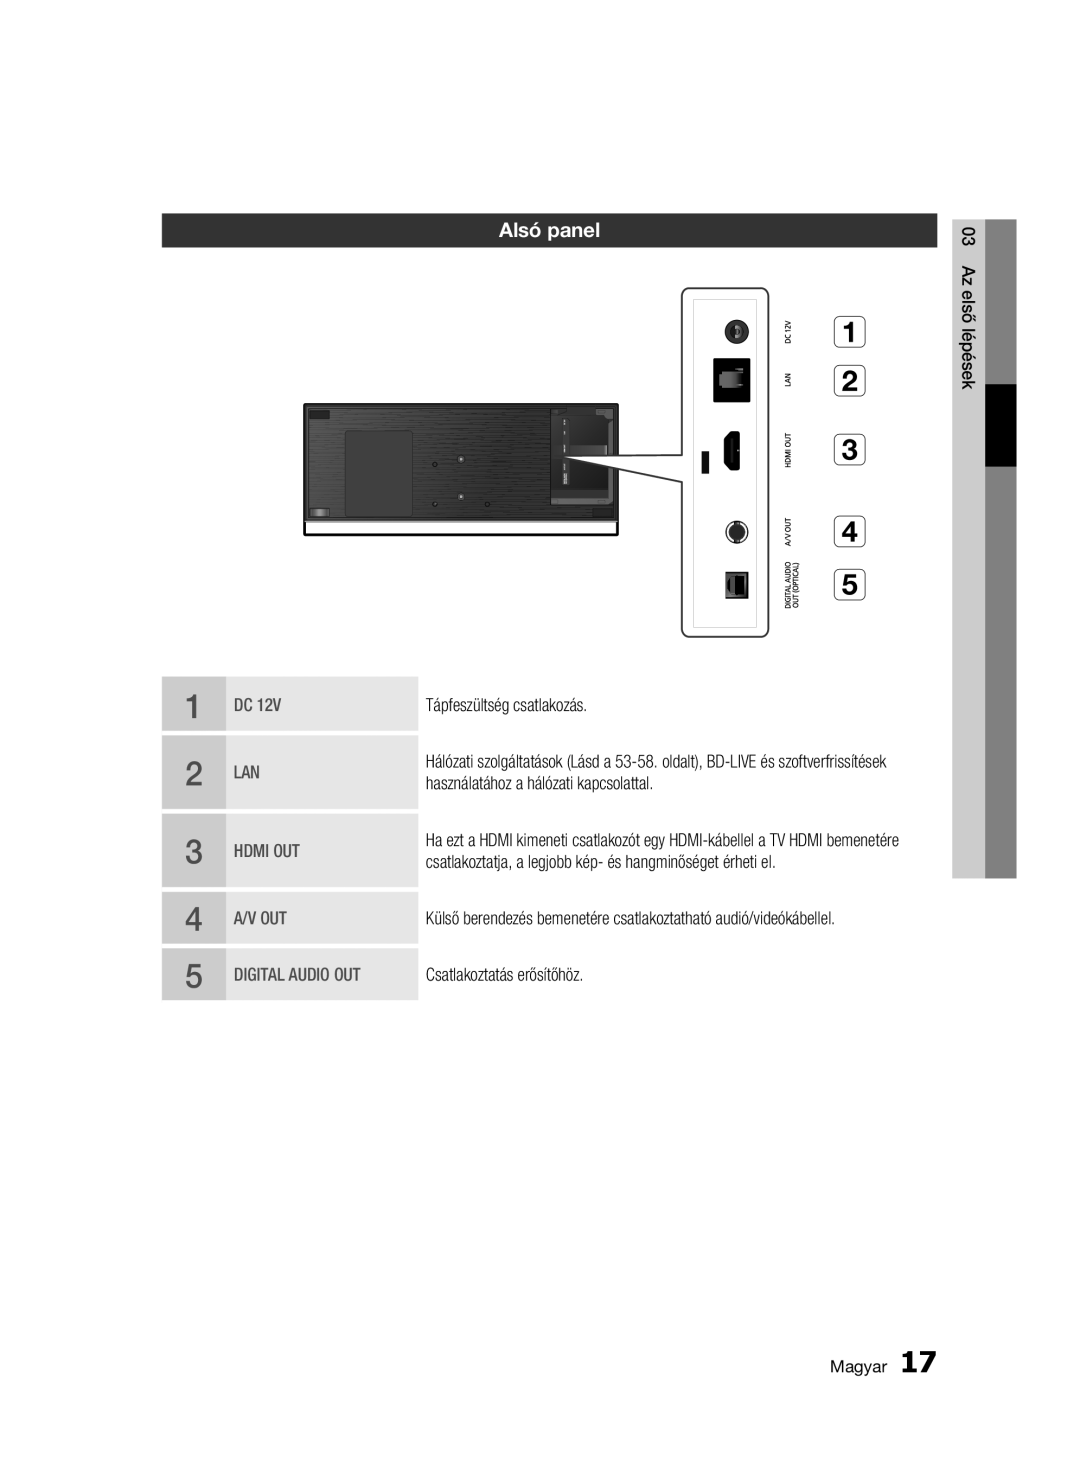 Samsung BD-C7500W/XEE, BD-C7500W/EDC manual Alsó panel, Tápfeszültség csatlakozás, Használatához a hálózati kapcsolattal 